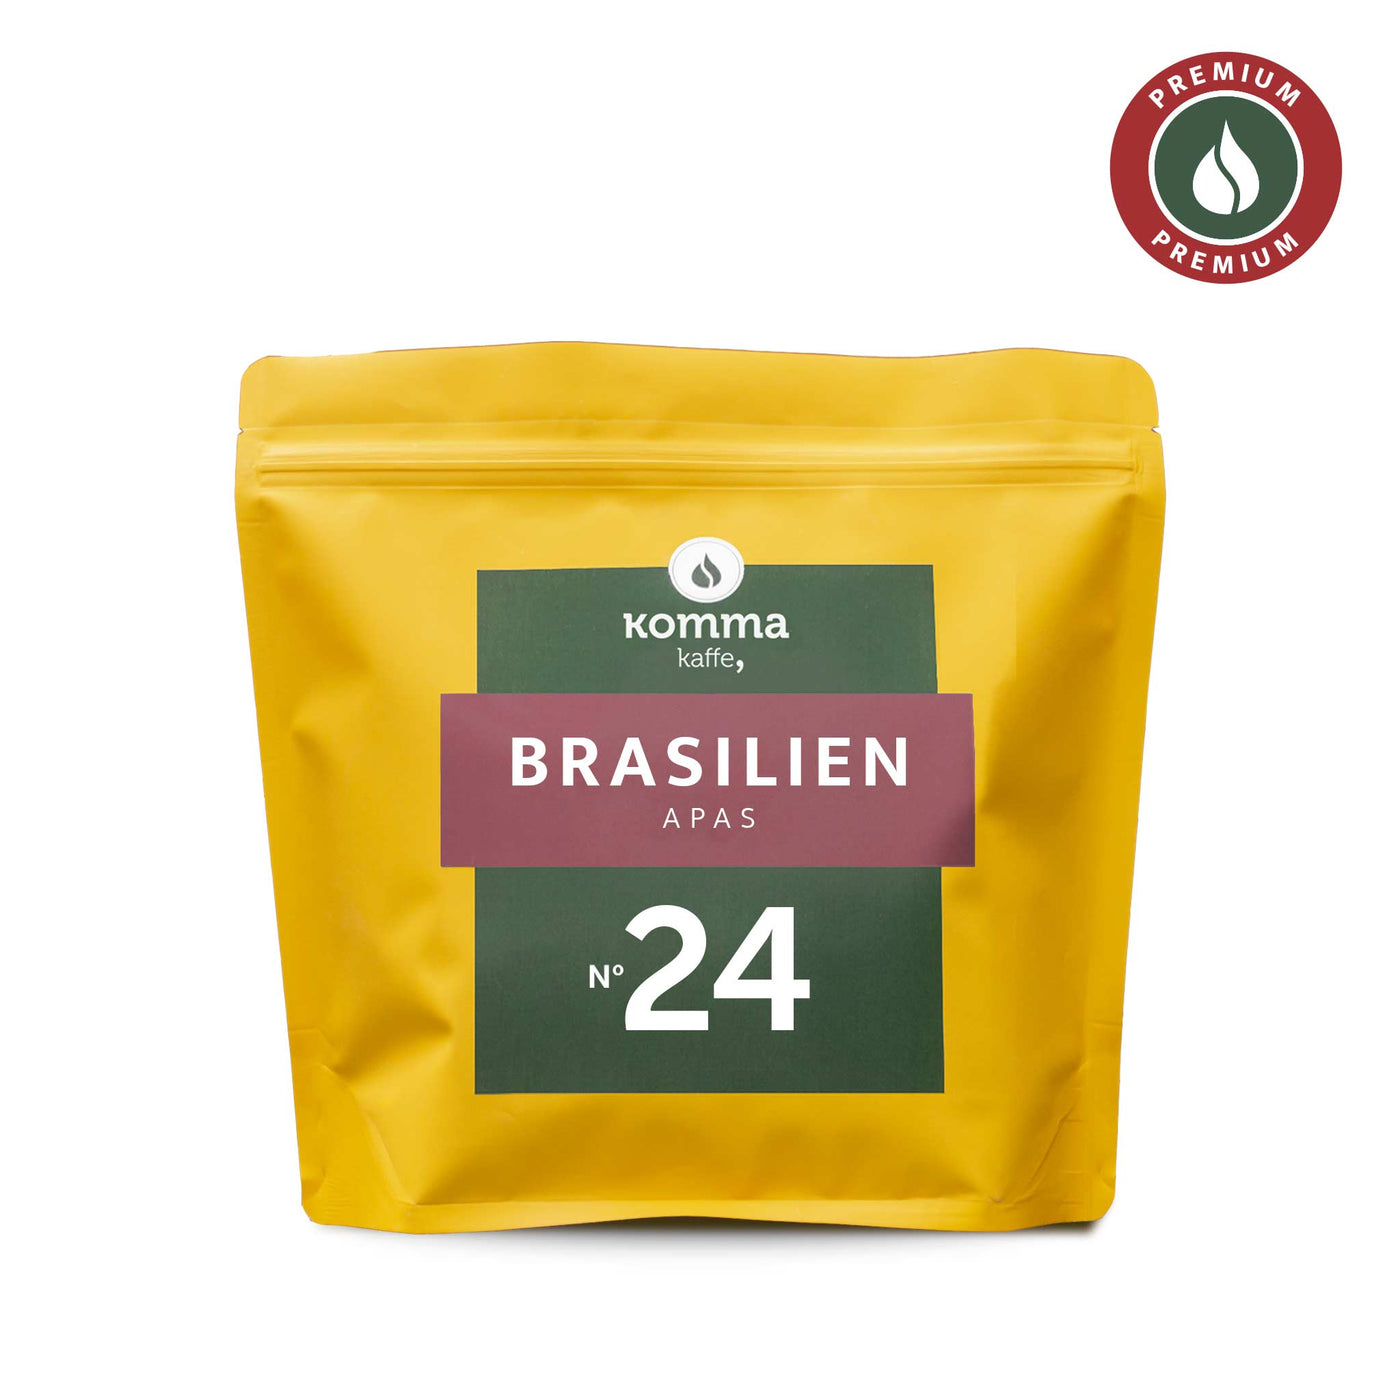 Kvalitetskaffe fra Brasilien fra Komma Kaffe